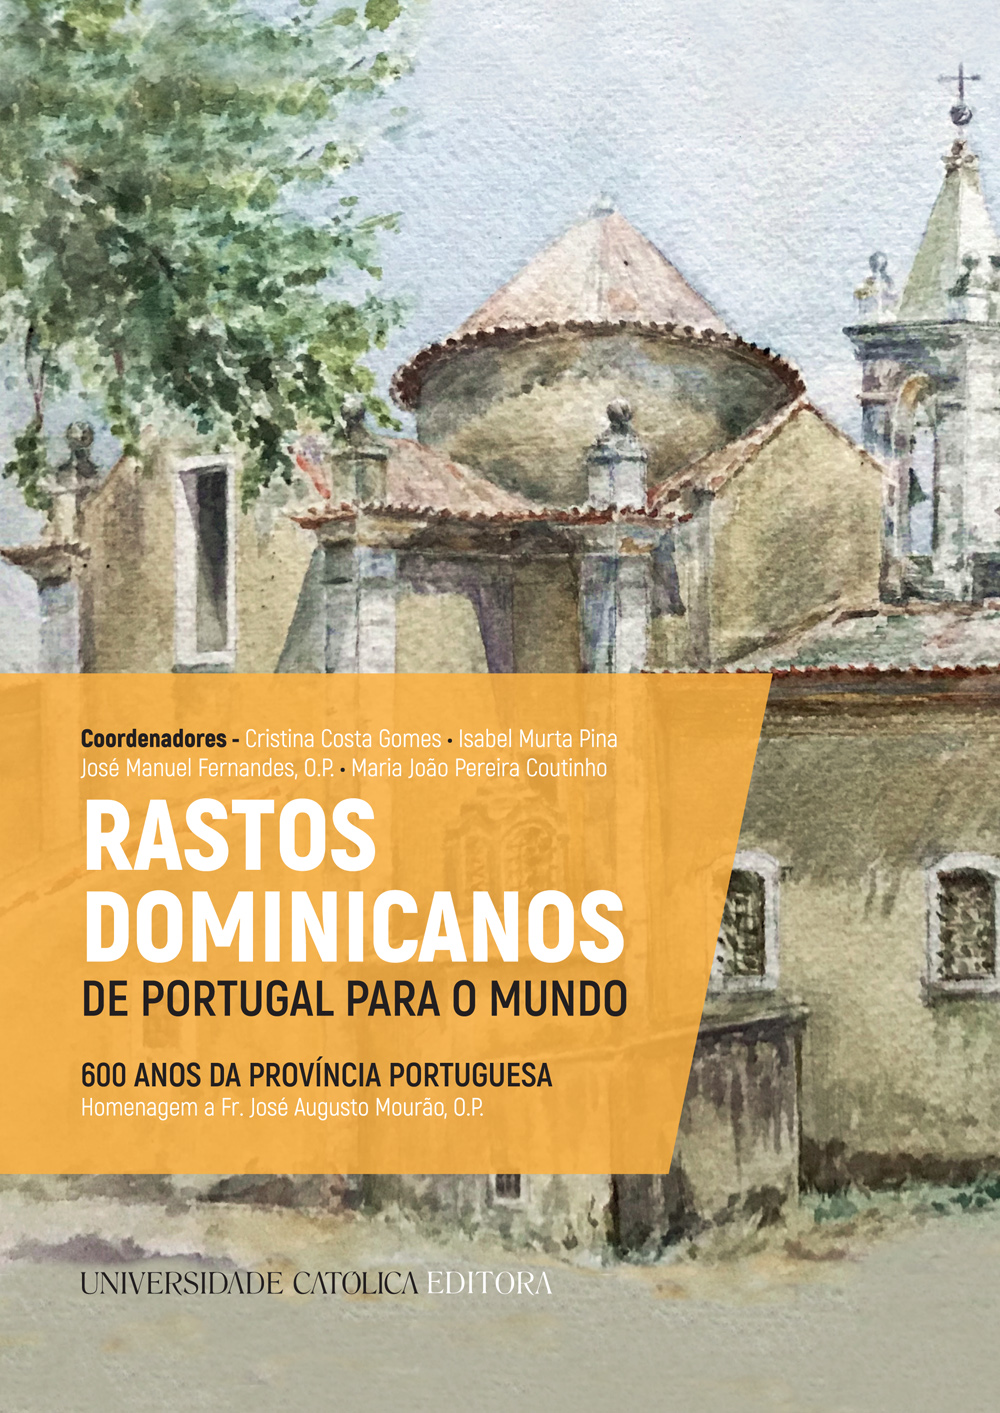 RASTOS DOMINICANOS DE PORTUGAL PARA O MUNDO
600 Anos da Província Portuguesa. Homenagem a Fr. José Augusto Mourão, O.P.